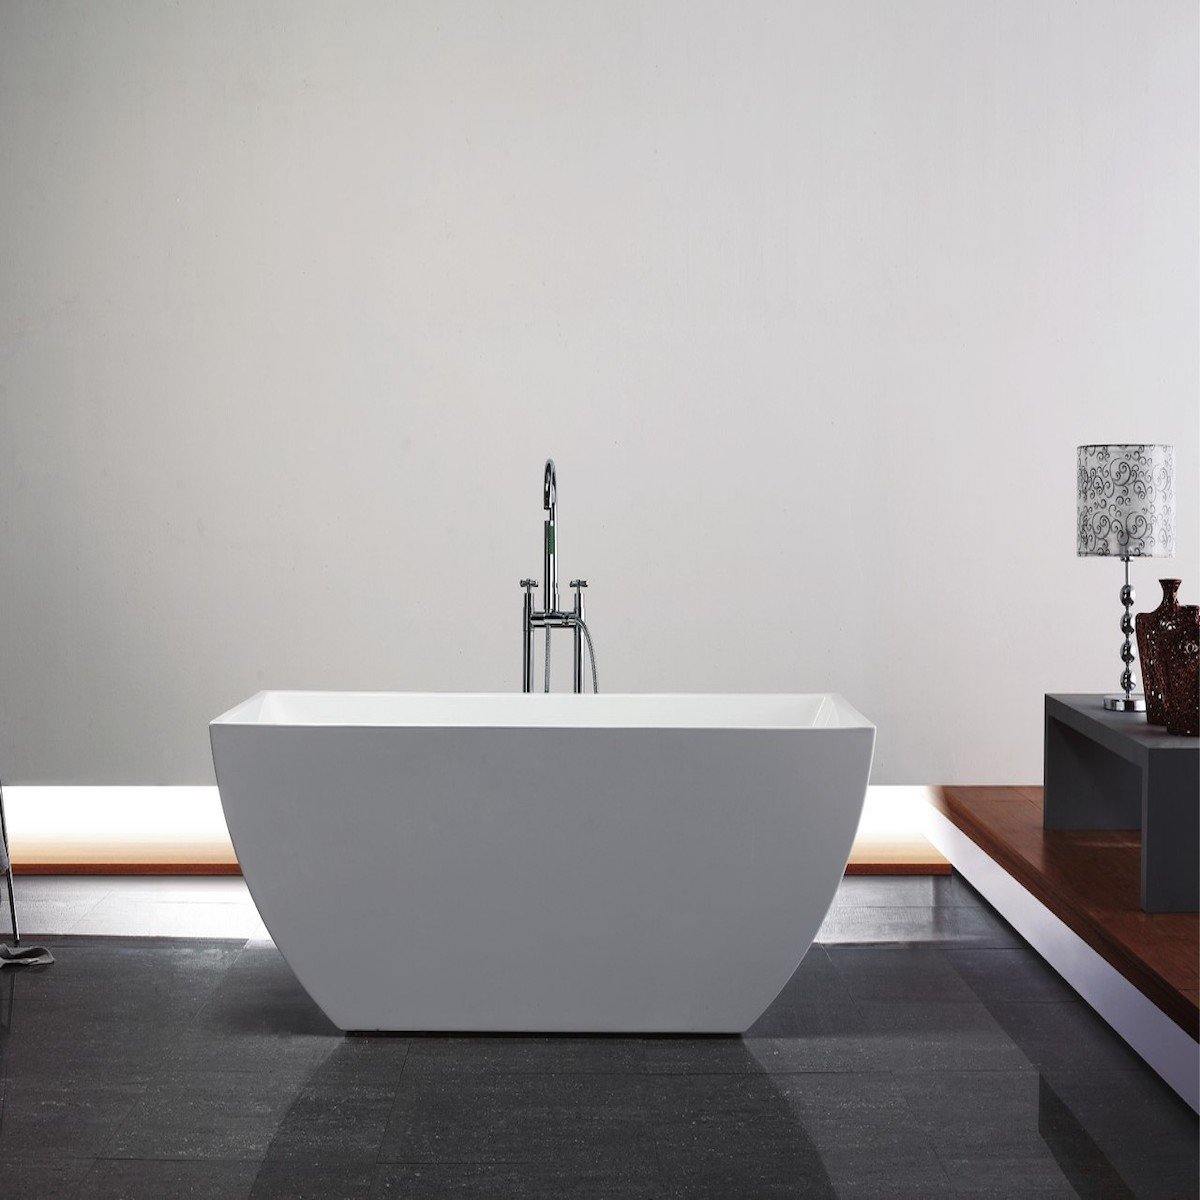 KubeBath Contemporanea 59 Inch White Freestanding Bathtub KFST2159 in Bathroom #size_59 inch